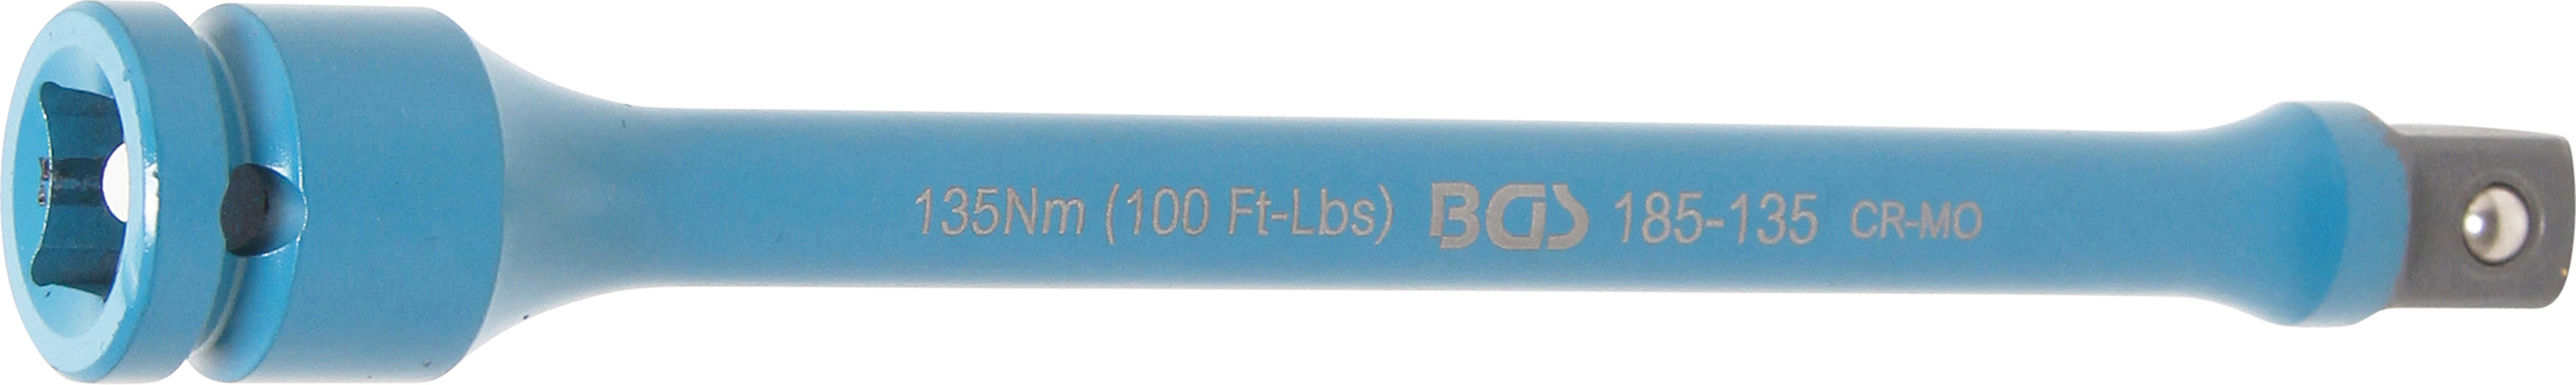 BGS 185-135 Dispozitiv special pentru strangerea prezoanelor de roti, 135 Nm